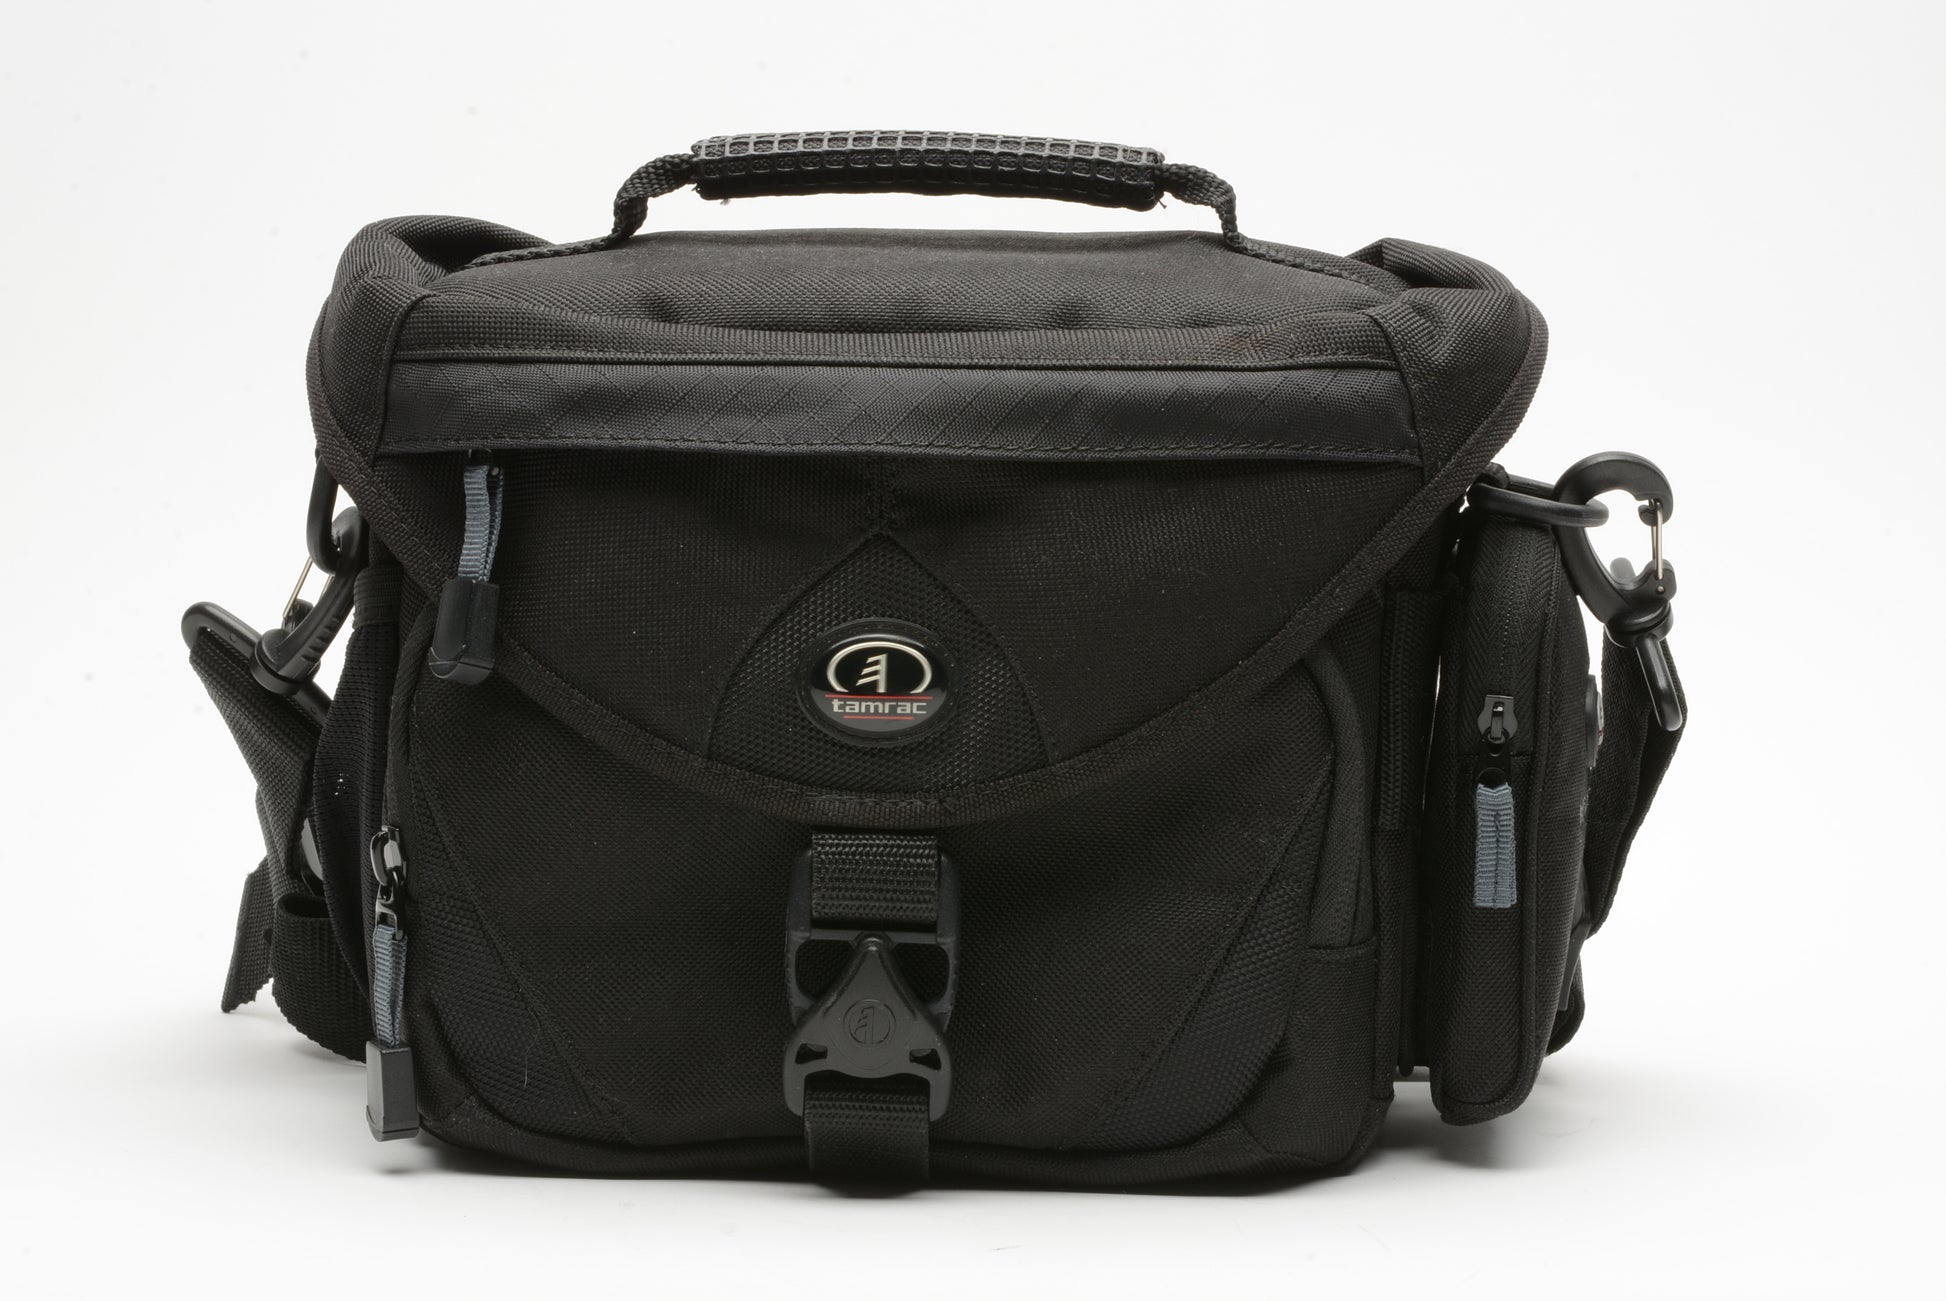 Explorer Camera Bag, 2-in-1 DSLR case and handbag